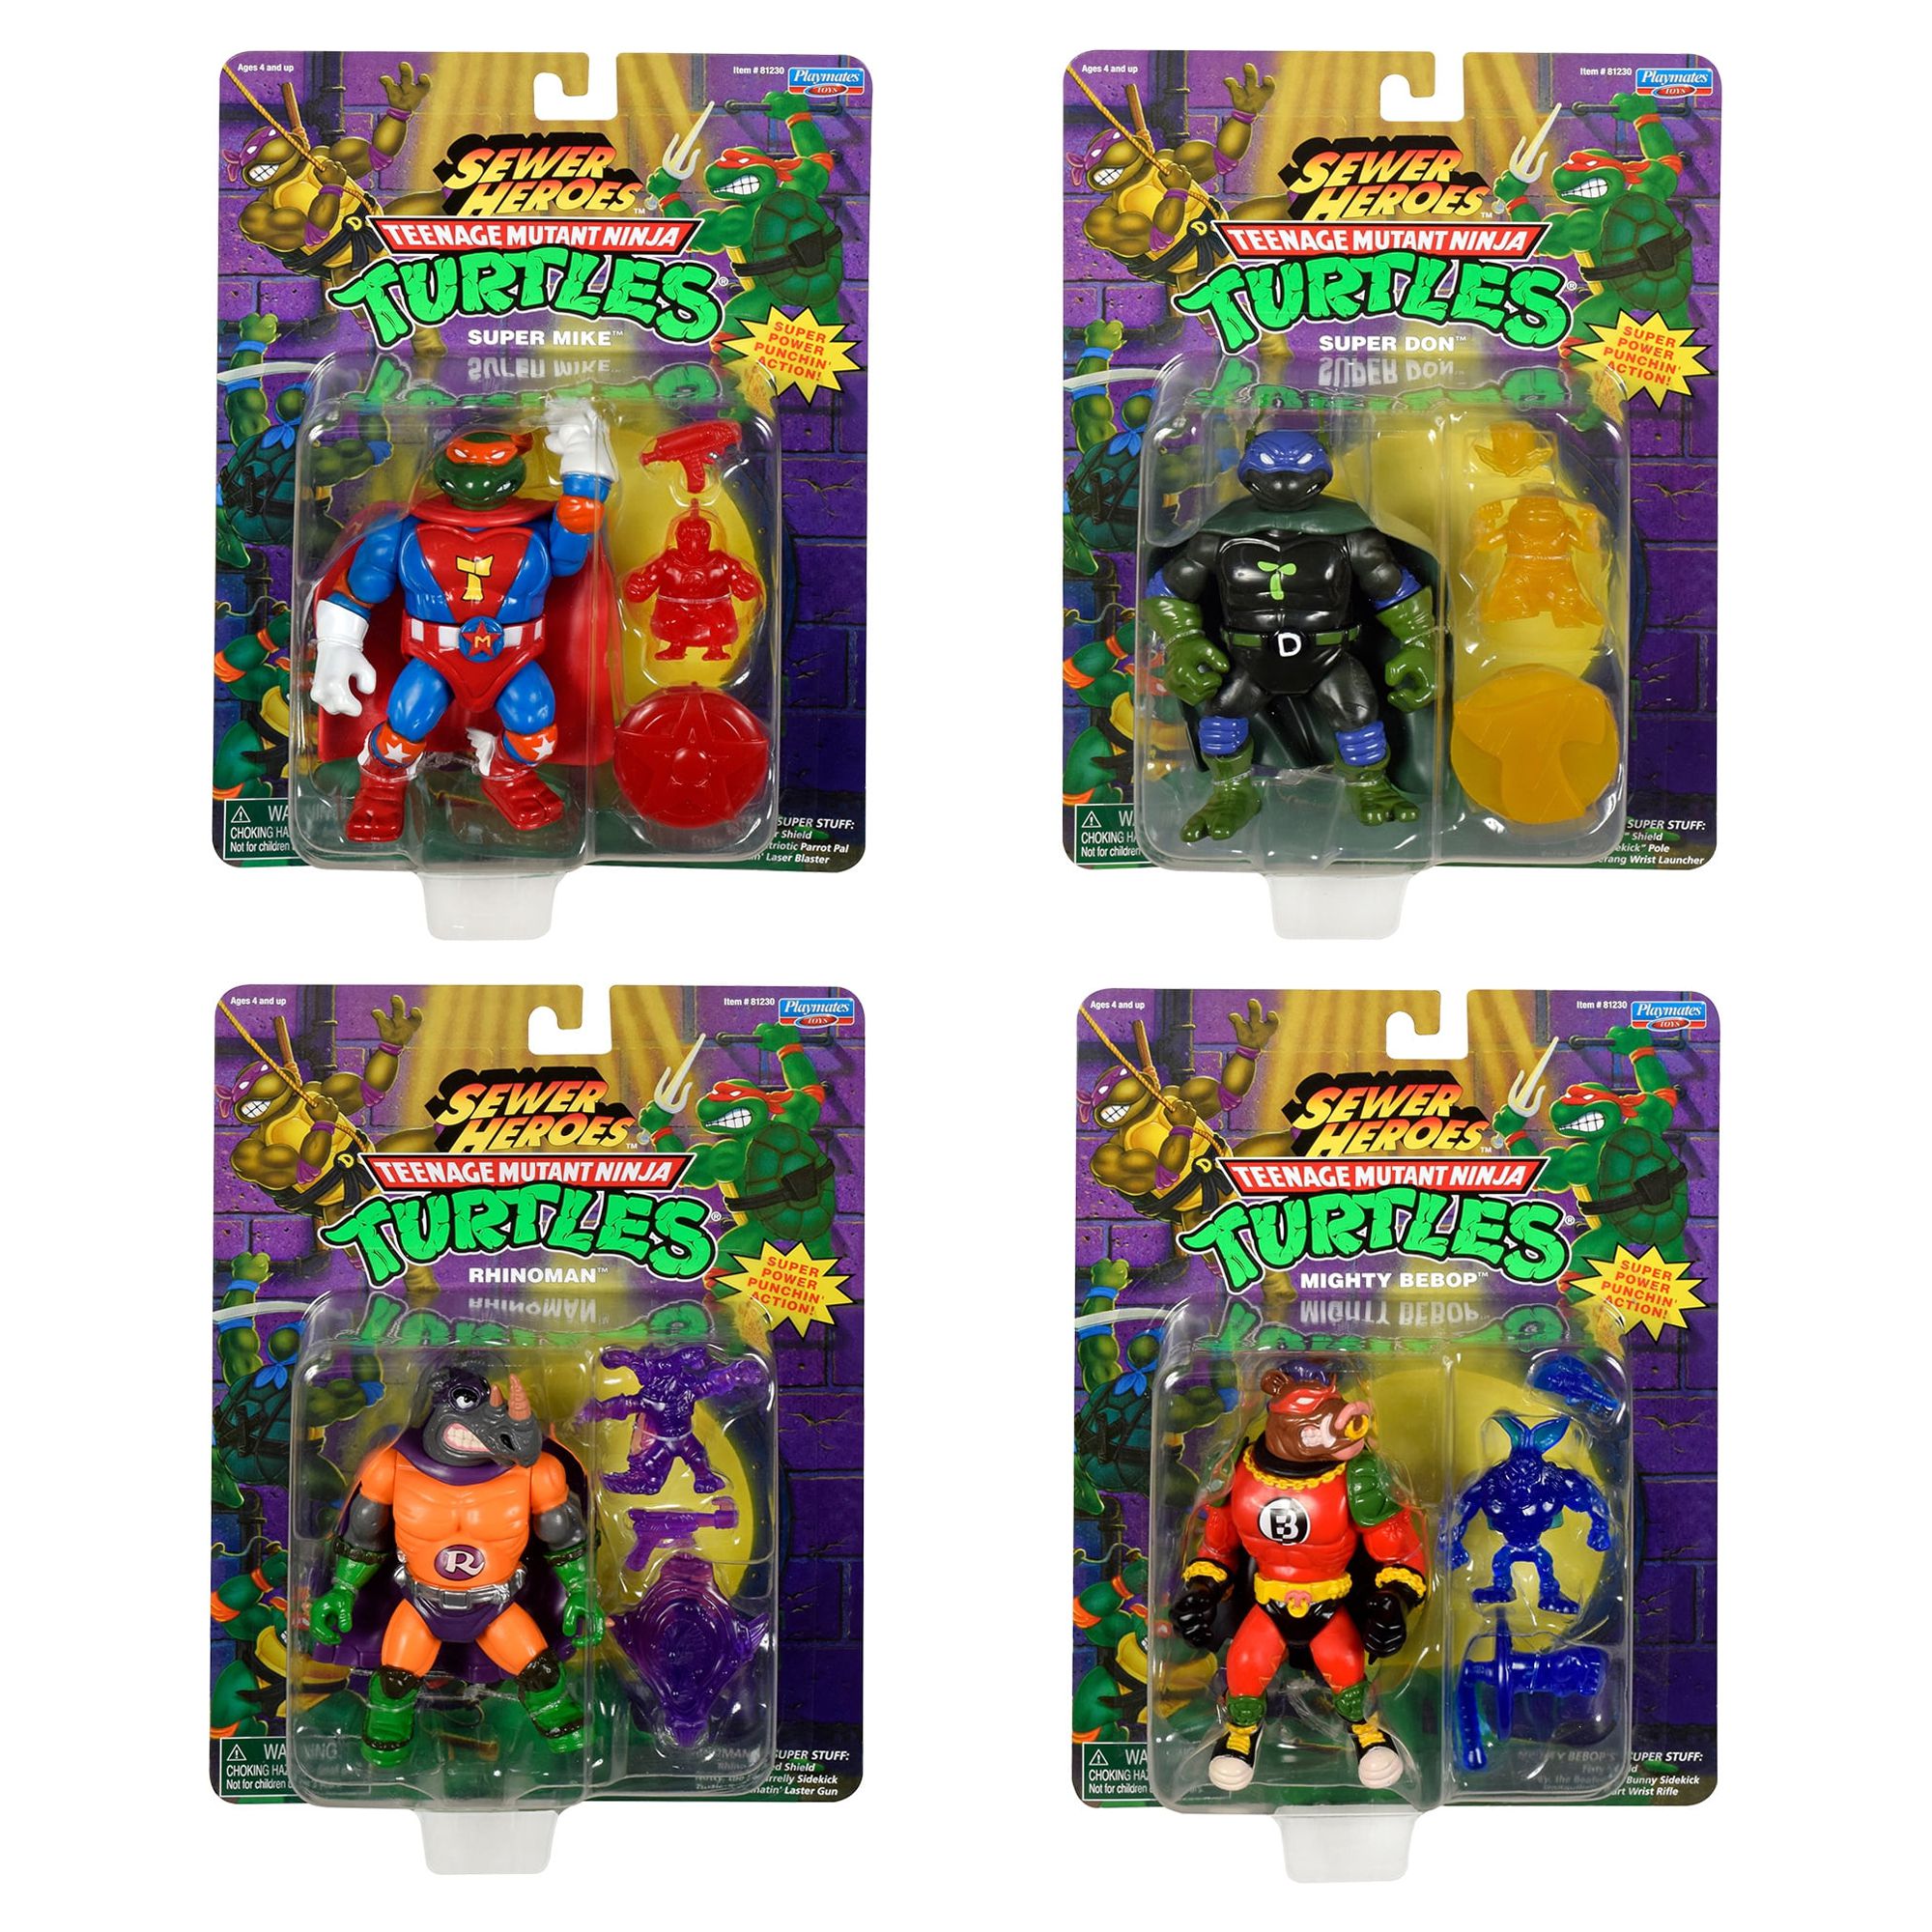 Teenage Mutant Ninja Turtles: Sewer Heroes 4-Figure Bundle with Accessories - image 3 of 8